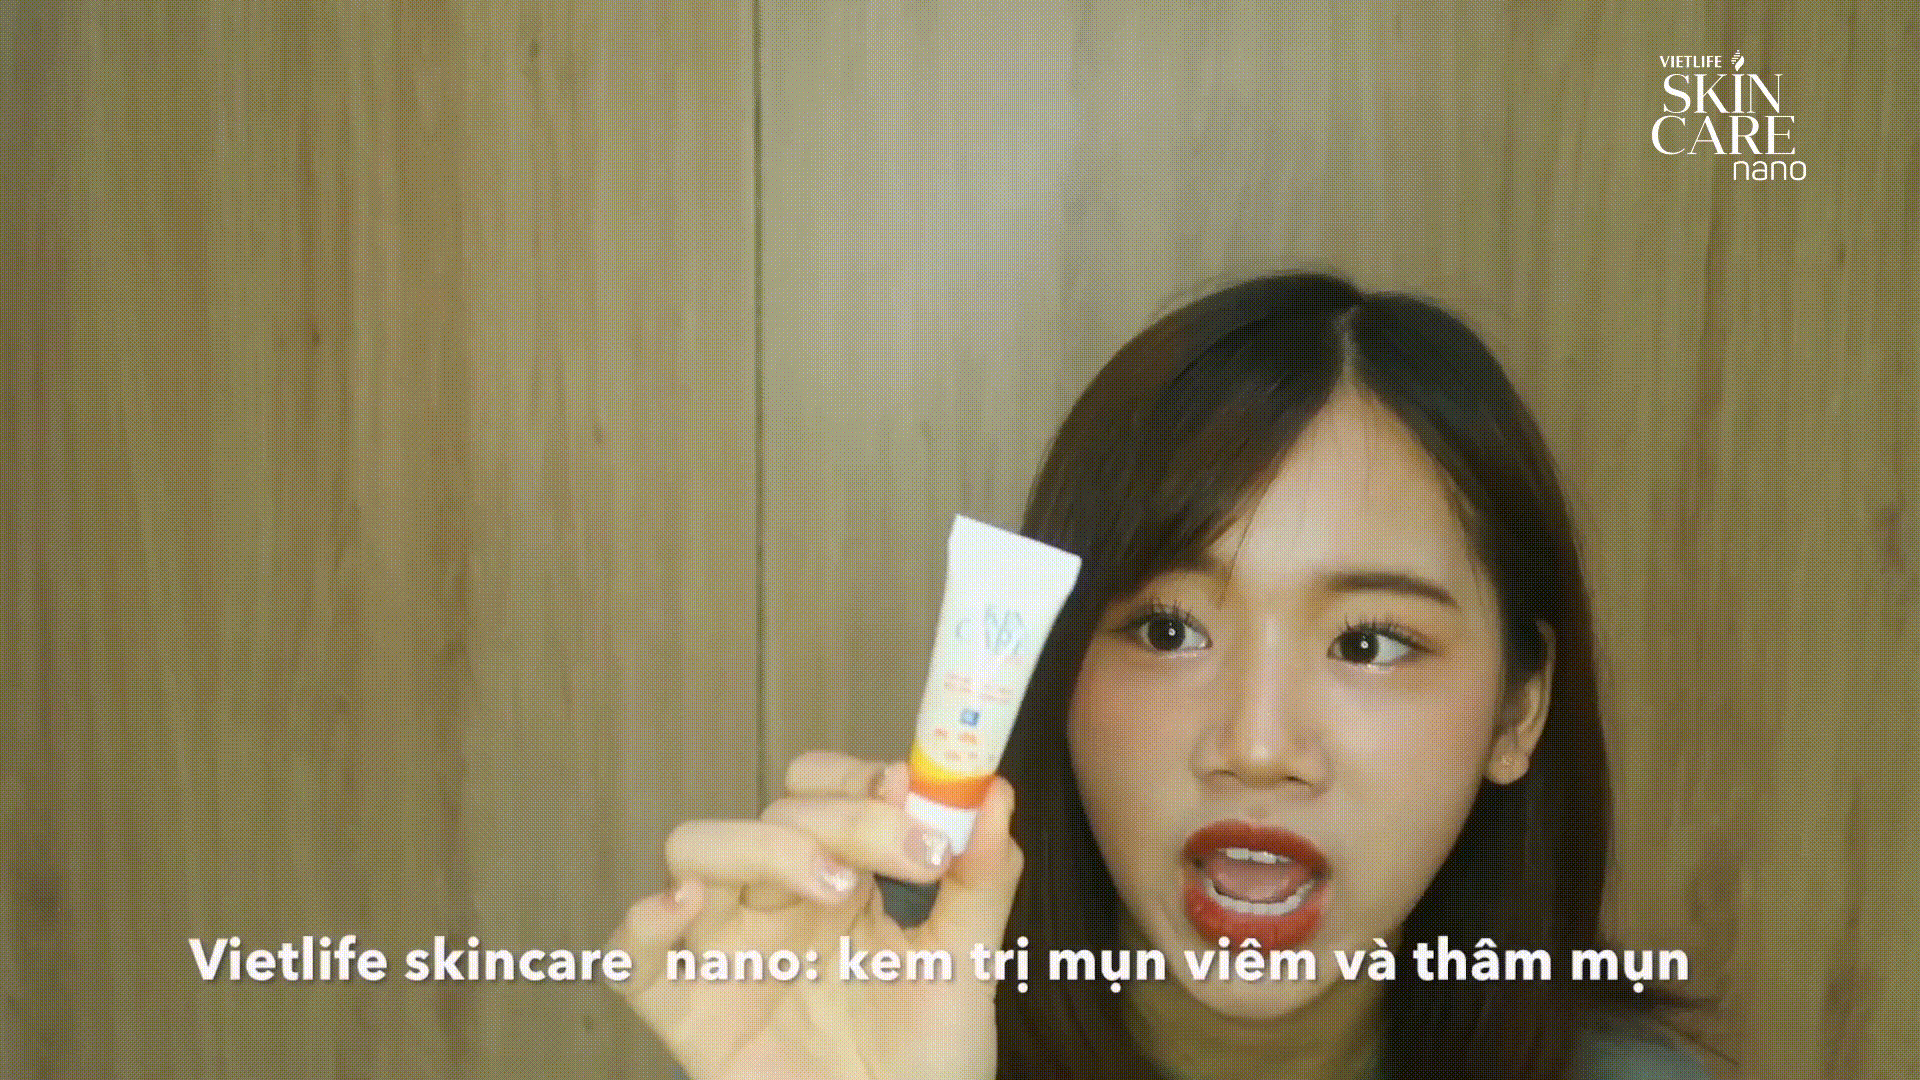 Vietlife Skincare Nano tặng hàng ngàn vé xem phim Bắc Kim Thang – phim tâm lý kinh dị hứa hẹn “cháy vé” dịp Halloween 2019 2